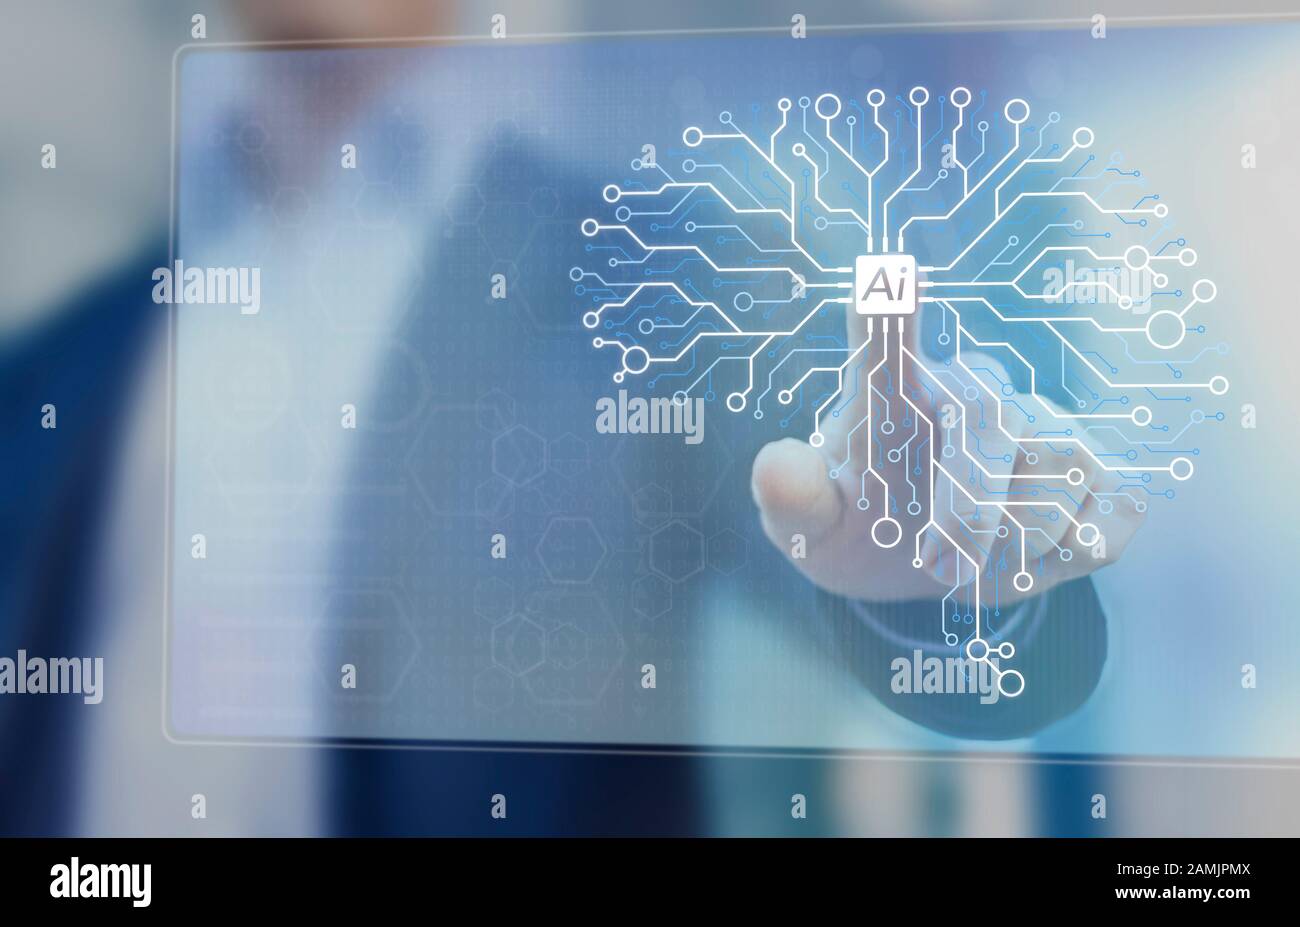 Intelligence artificielle et technologie d'apprentissage machine pour automatiser les processus, concept avec un ingénieur d'IA travaillant sur le réseau neuronal de cerveau de circuit électronique Banque D'Images